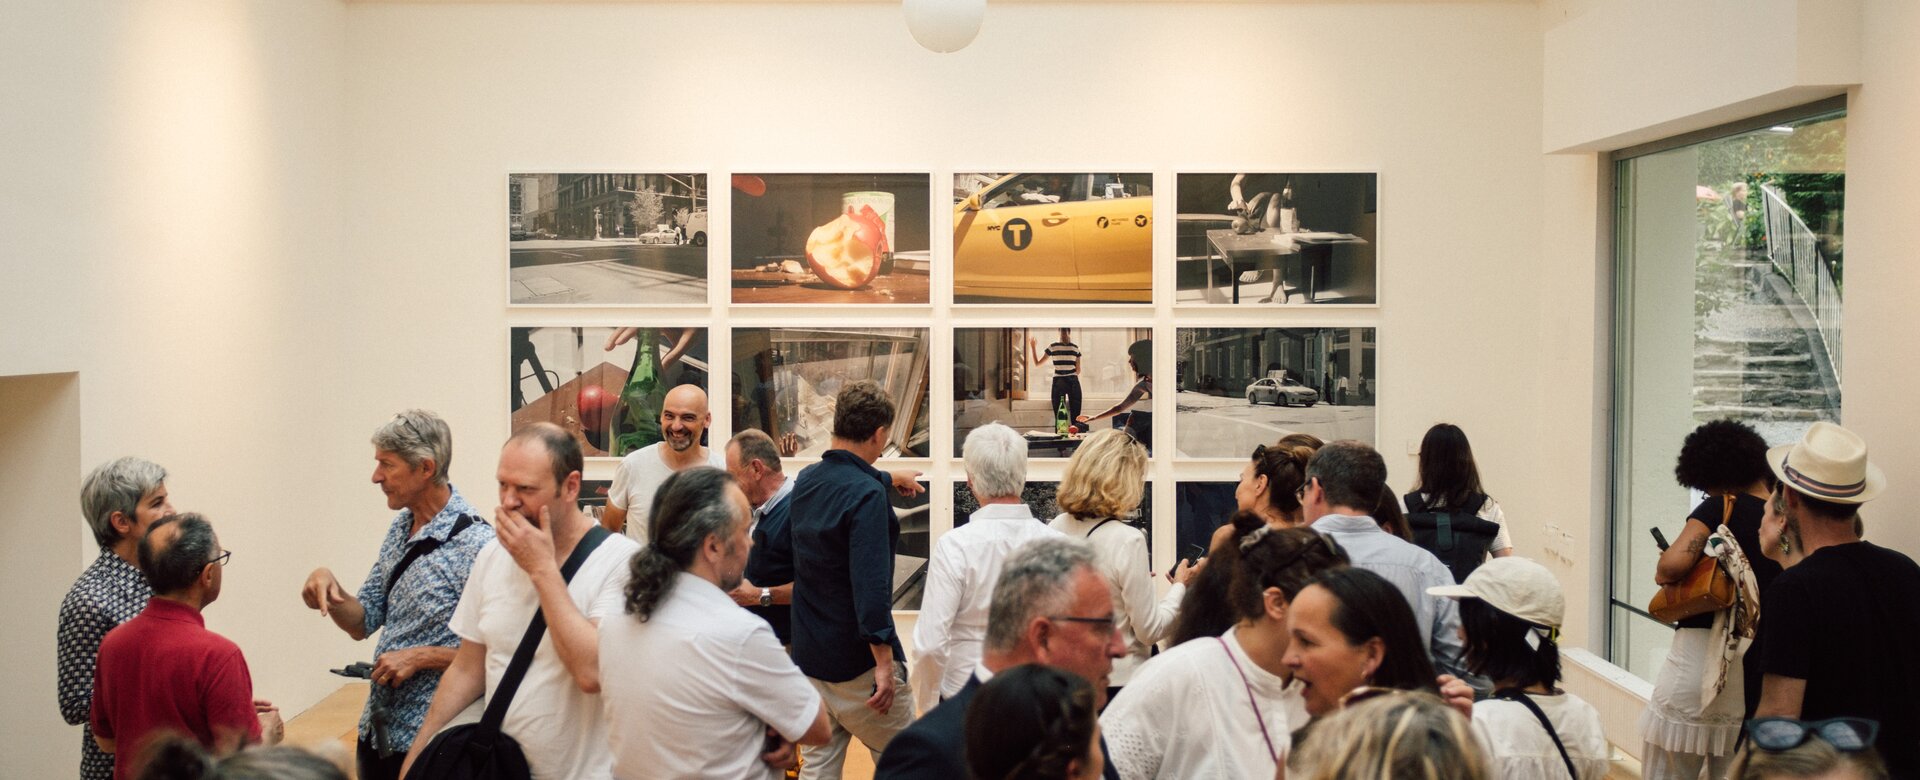 Viele Personen gehen in einem Raum mit einer Kunstgalerie herum | © Hannes Wichmann